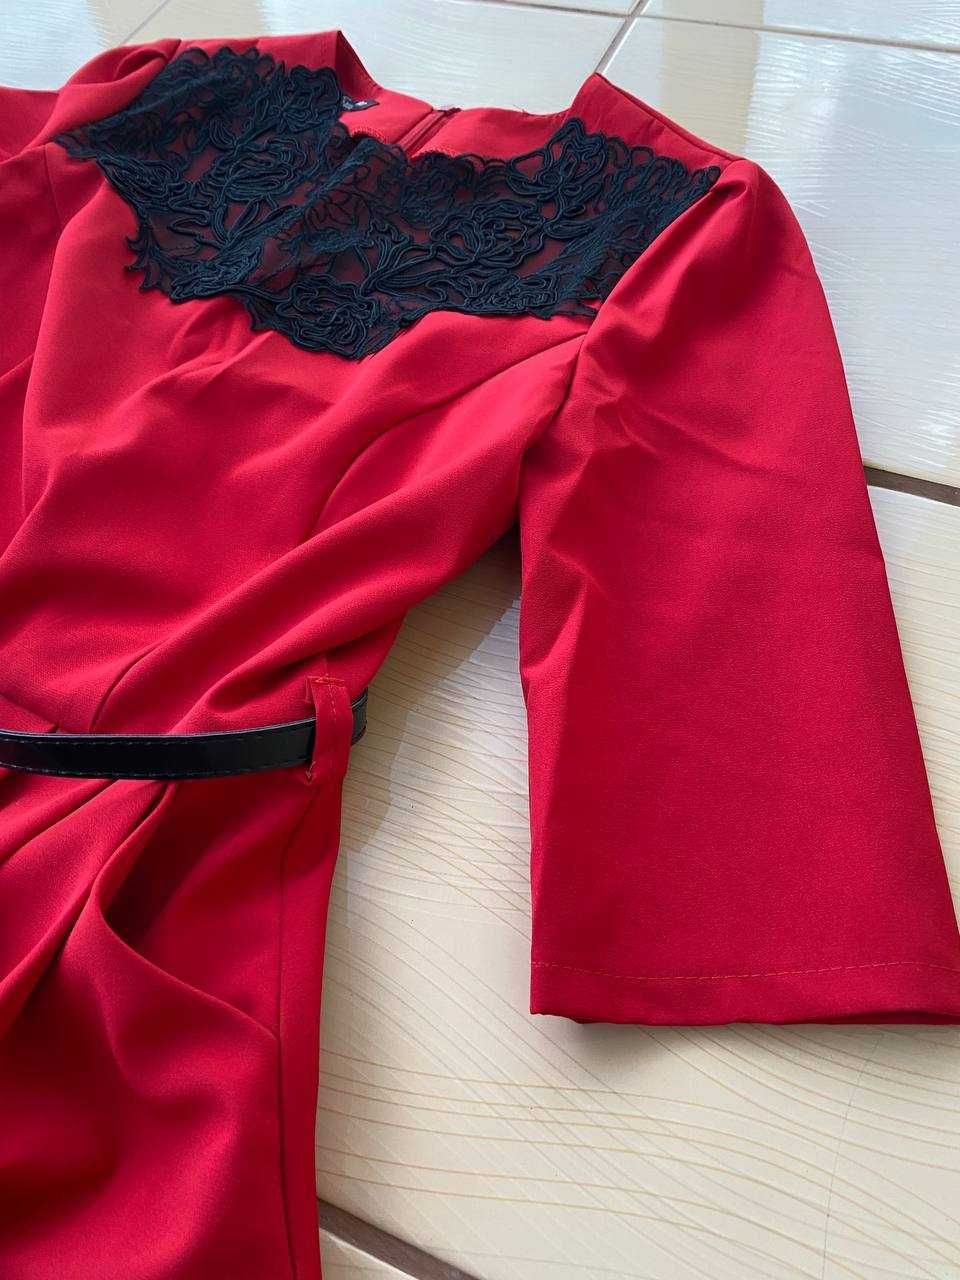 Червоне плаття. Розмір М/L.